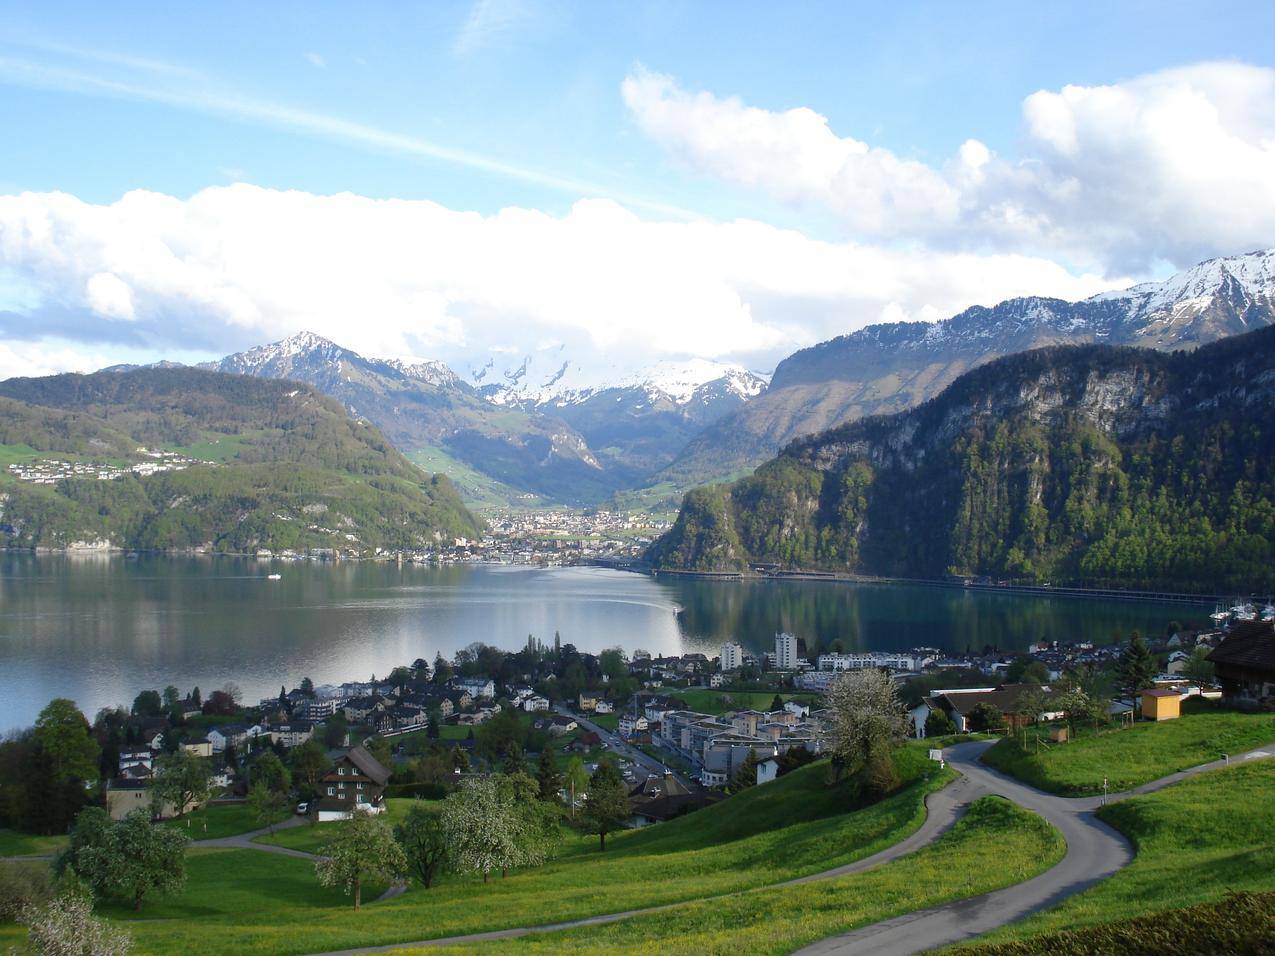 瑞士琉森湖蓝图片风景桌面壁纸-壁纸图片大全